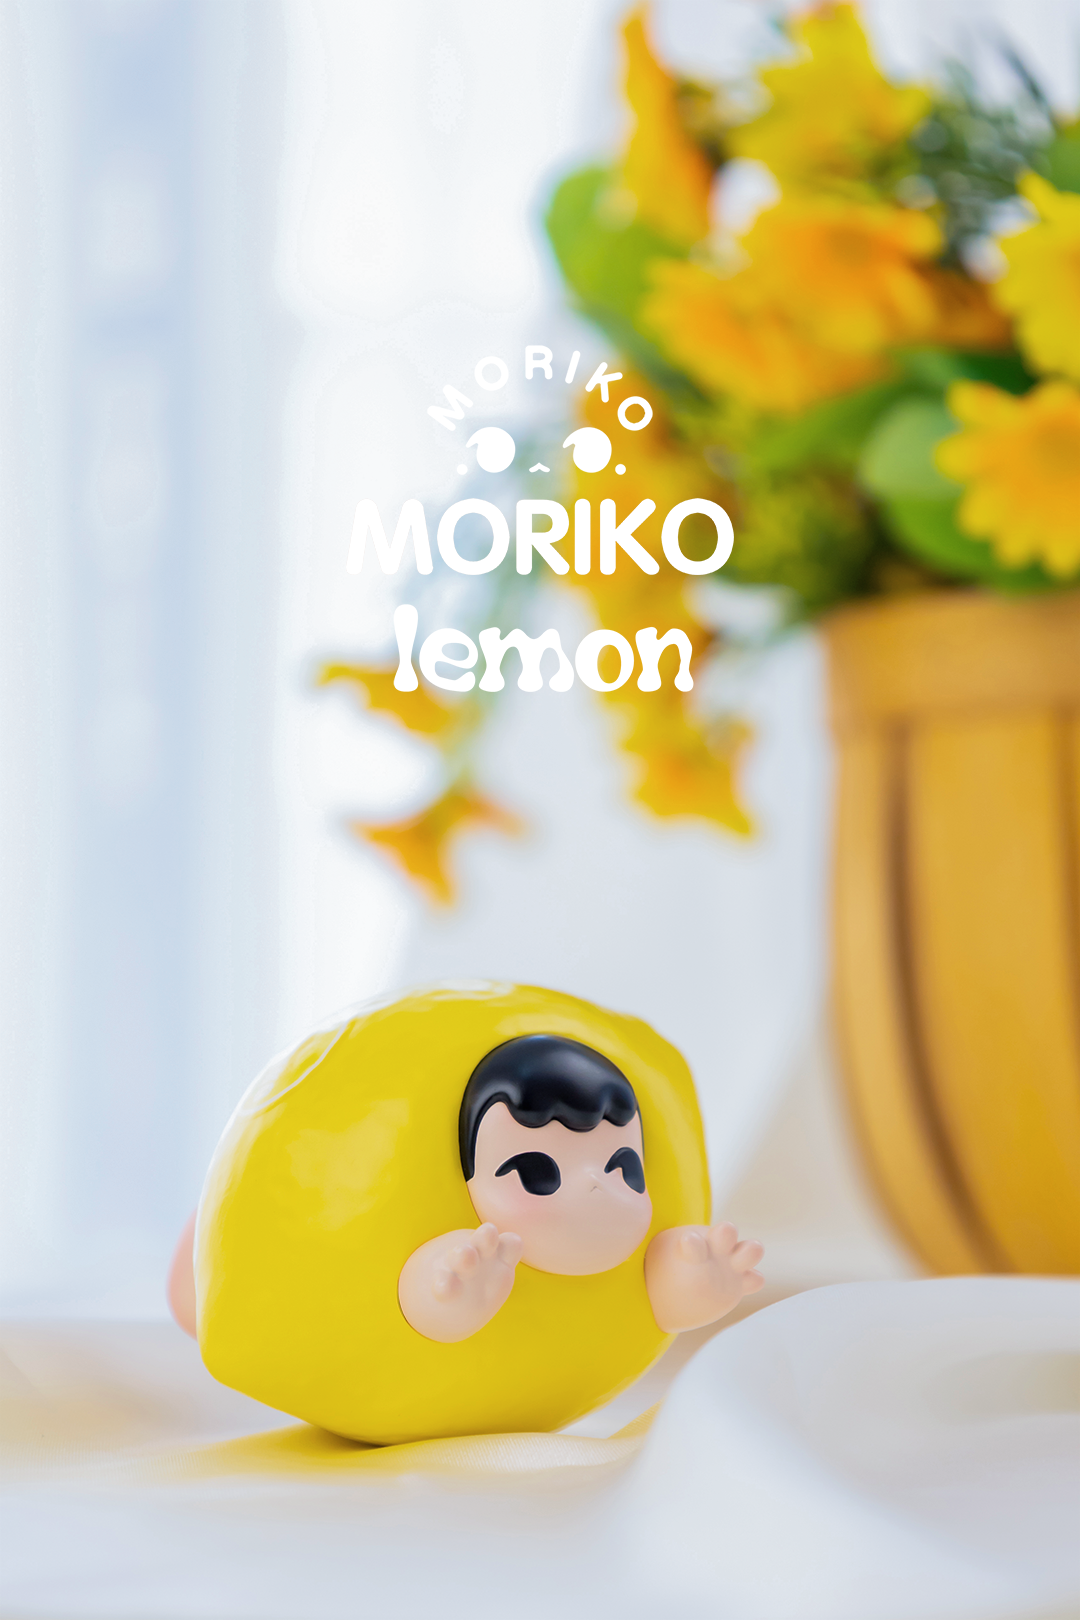 Moriko-Lemon by MoeDouble